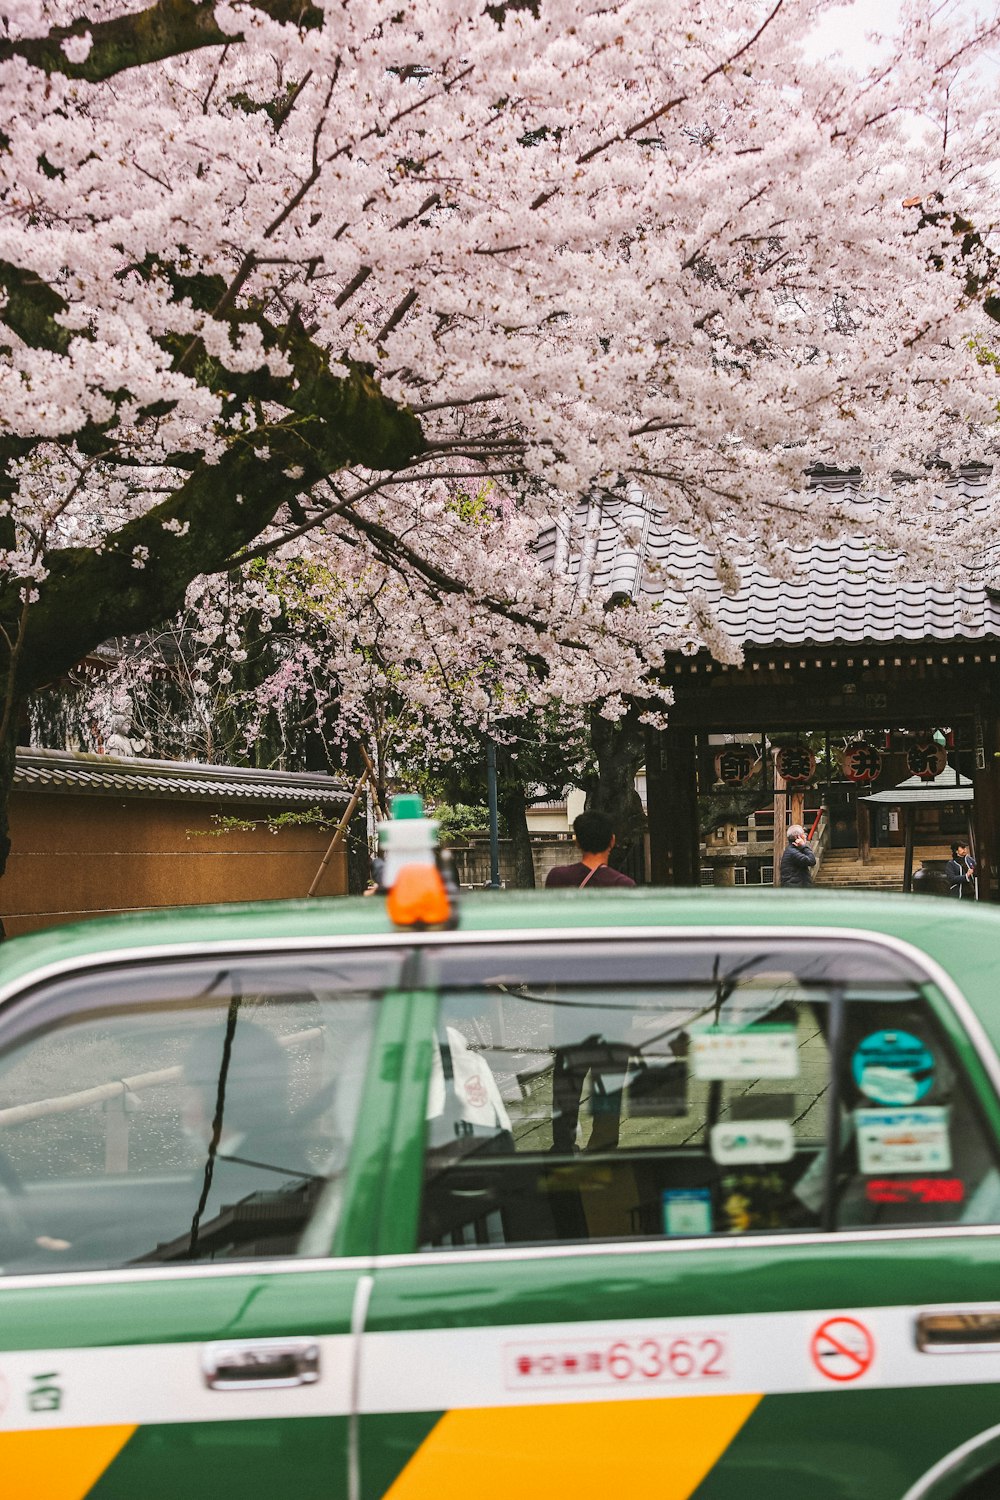 Un taxi verde que pasa junto a un cerezo en flor